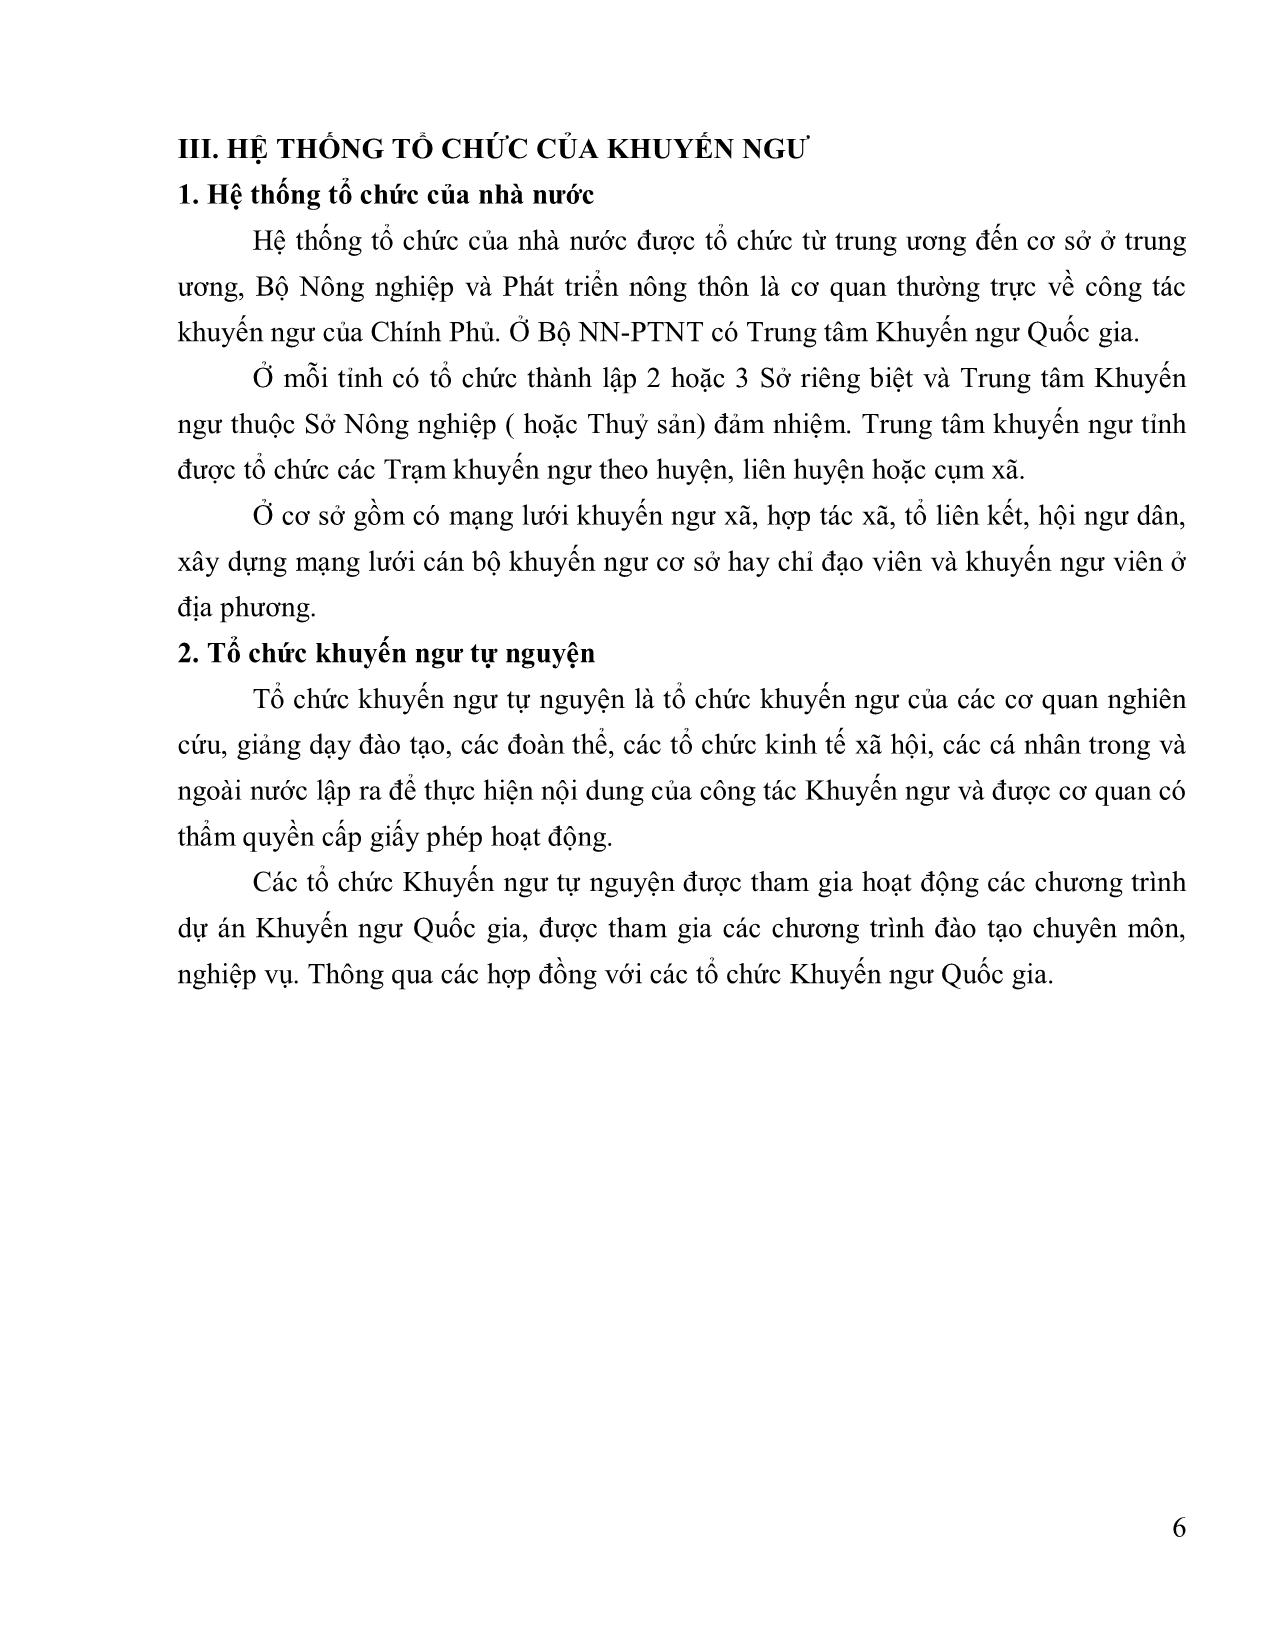 Bài giảng Khuyến ngư trang 5